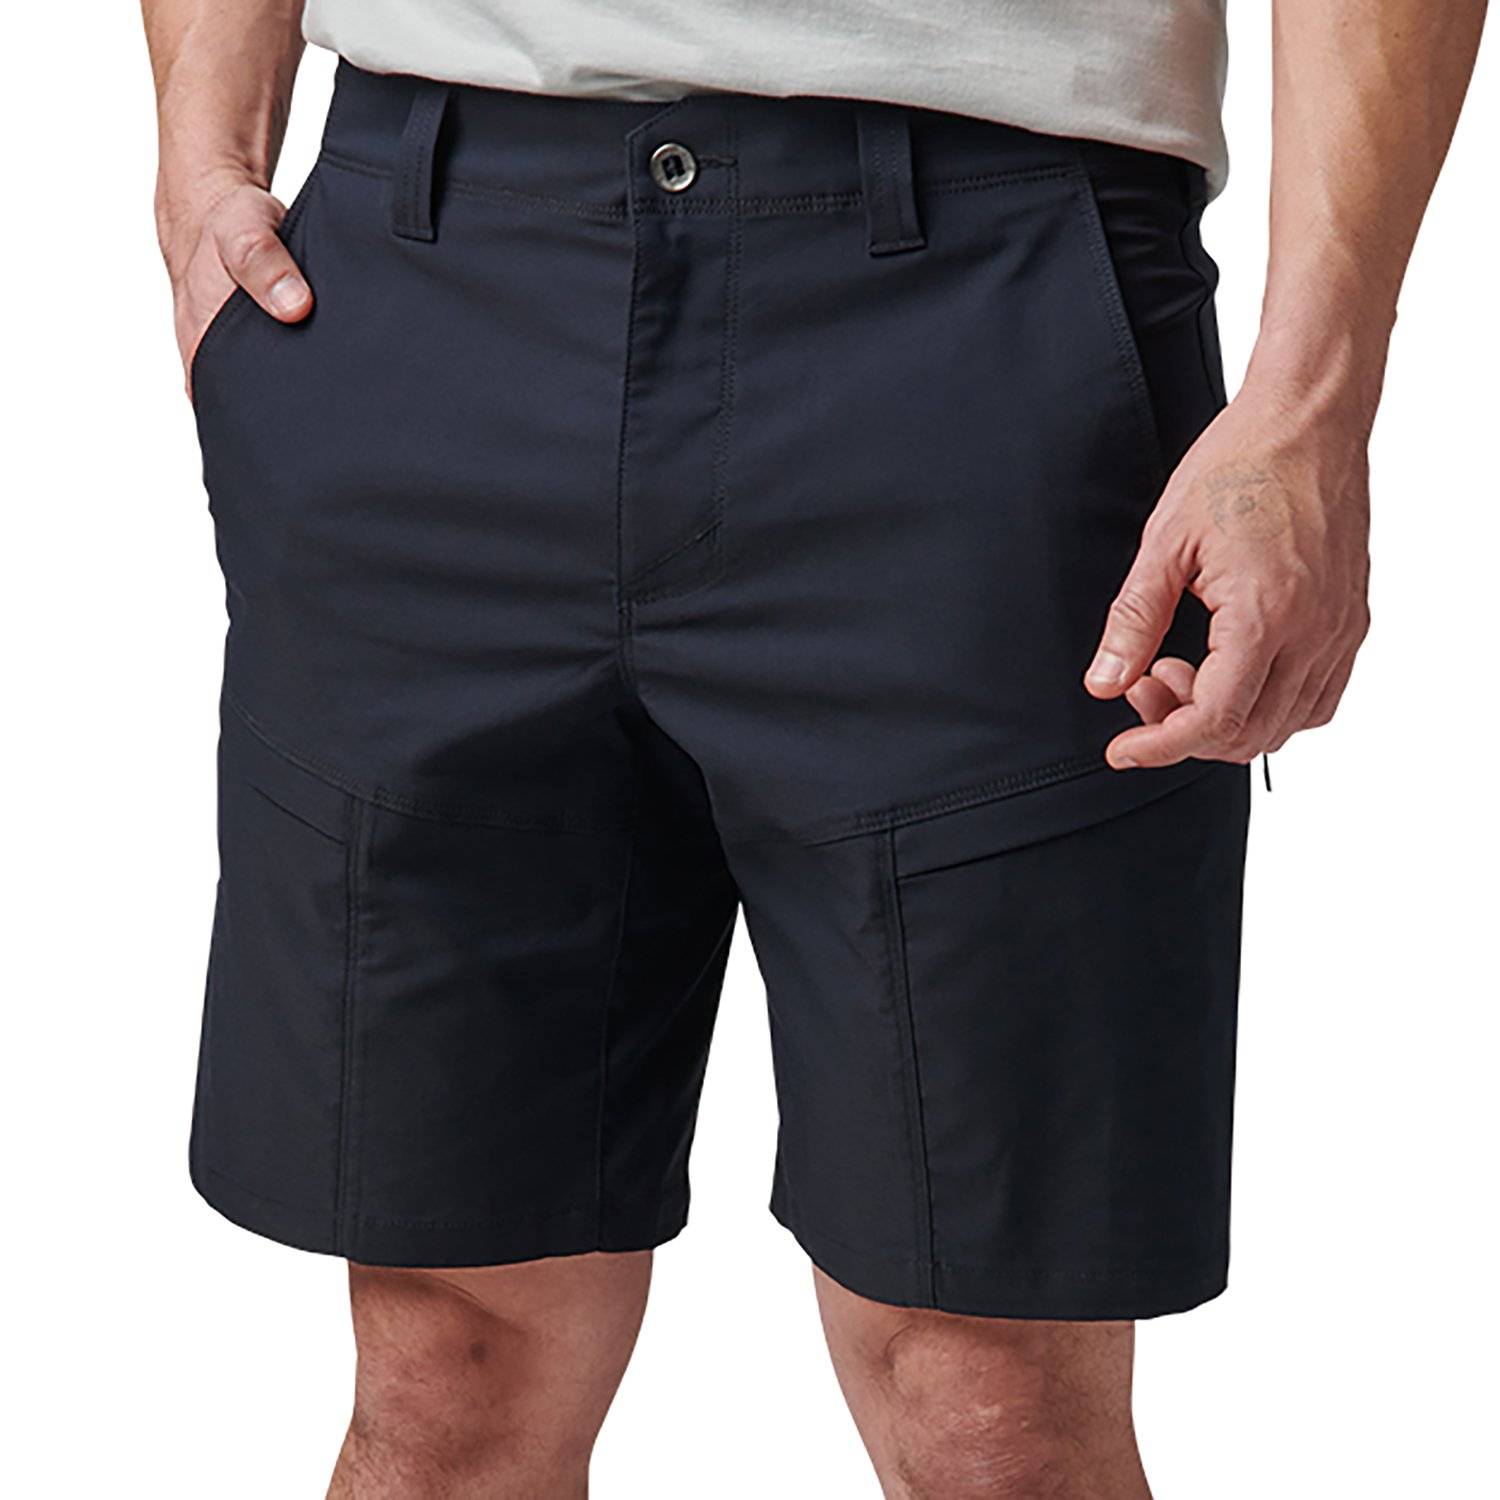 5.11 Tactical Shorts, 5.11 Duty Shorts & Athletic Shorts